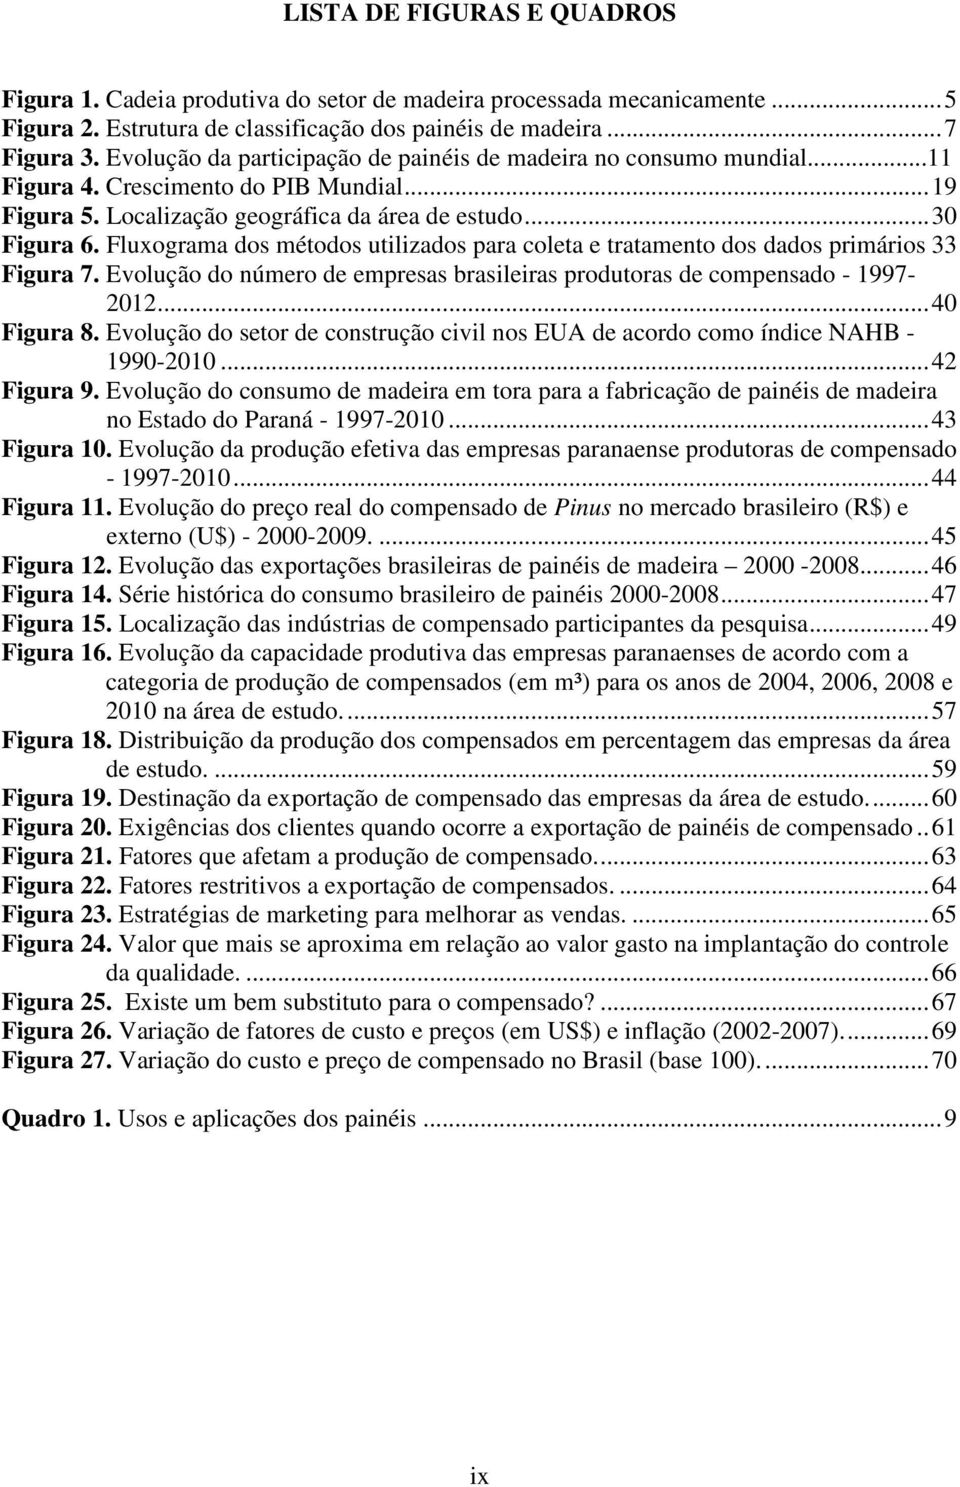 Fluxograma dos métodos utilizados para coleta e tratamento dos dados primários 33 Figura 7. Evolução do número de empresas brasileiras produtoras de compensado - 1997-2012... 40 Figura 8.